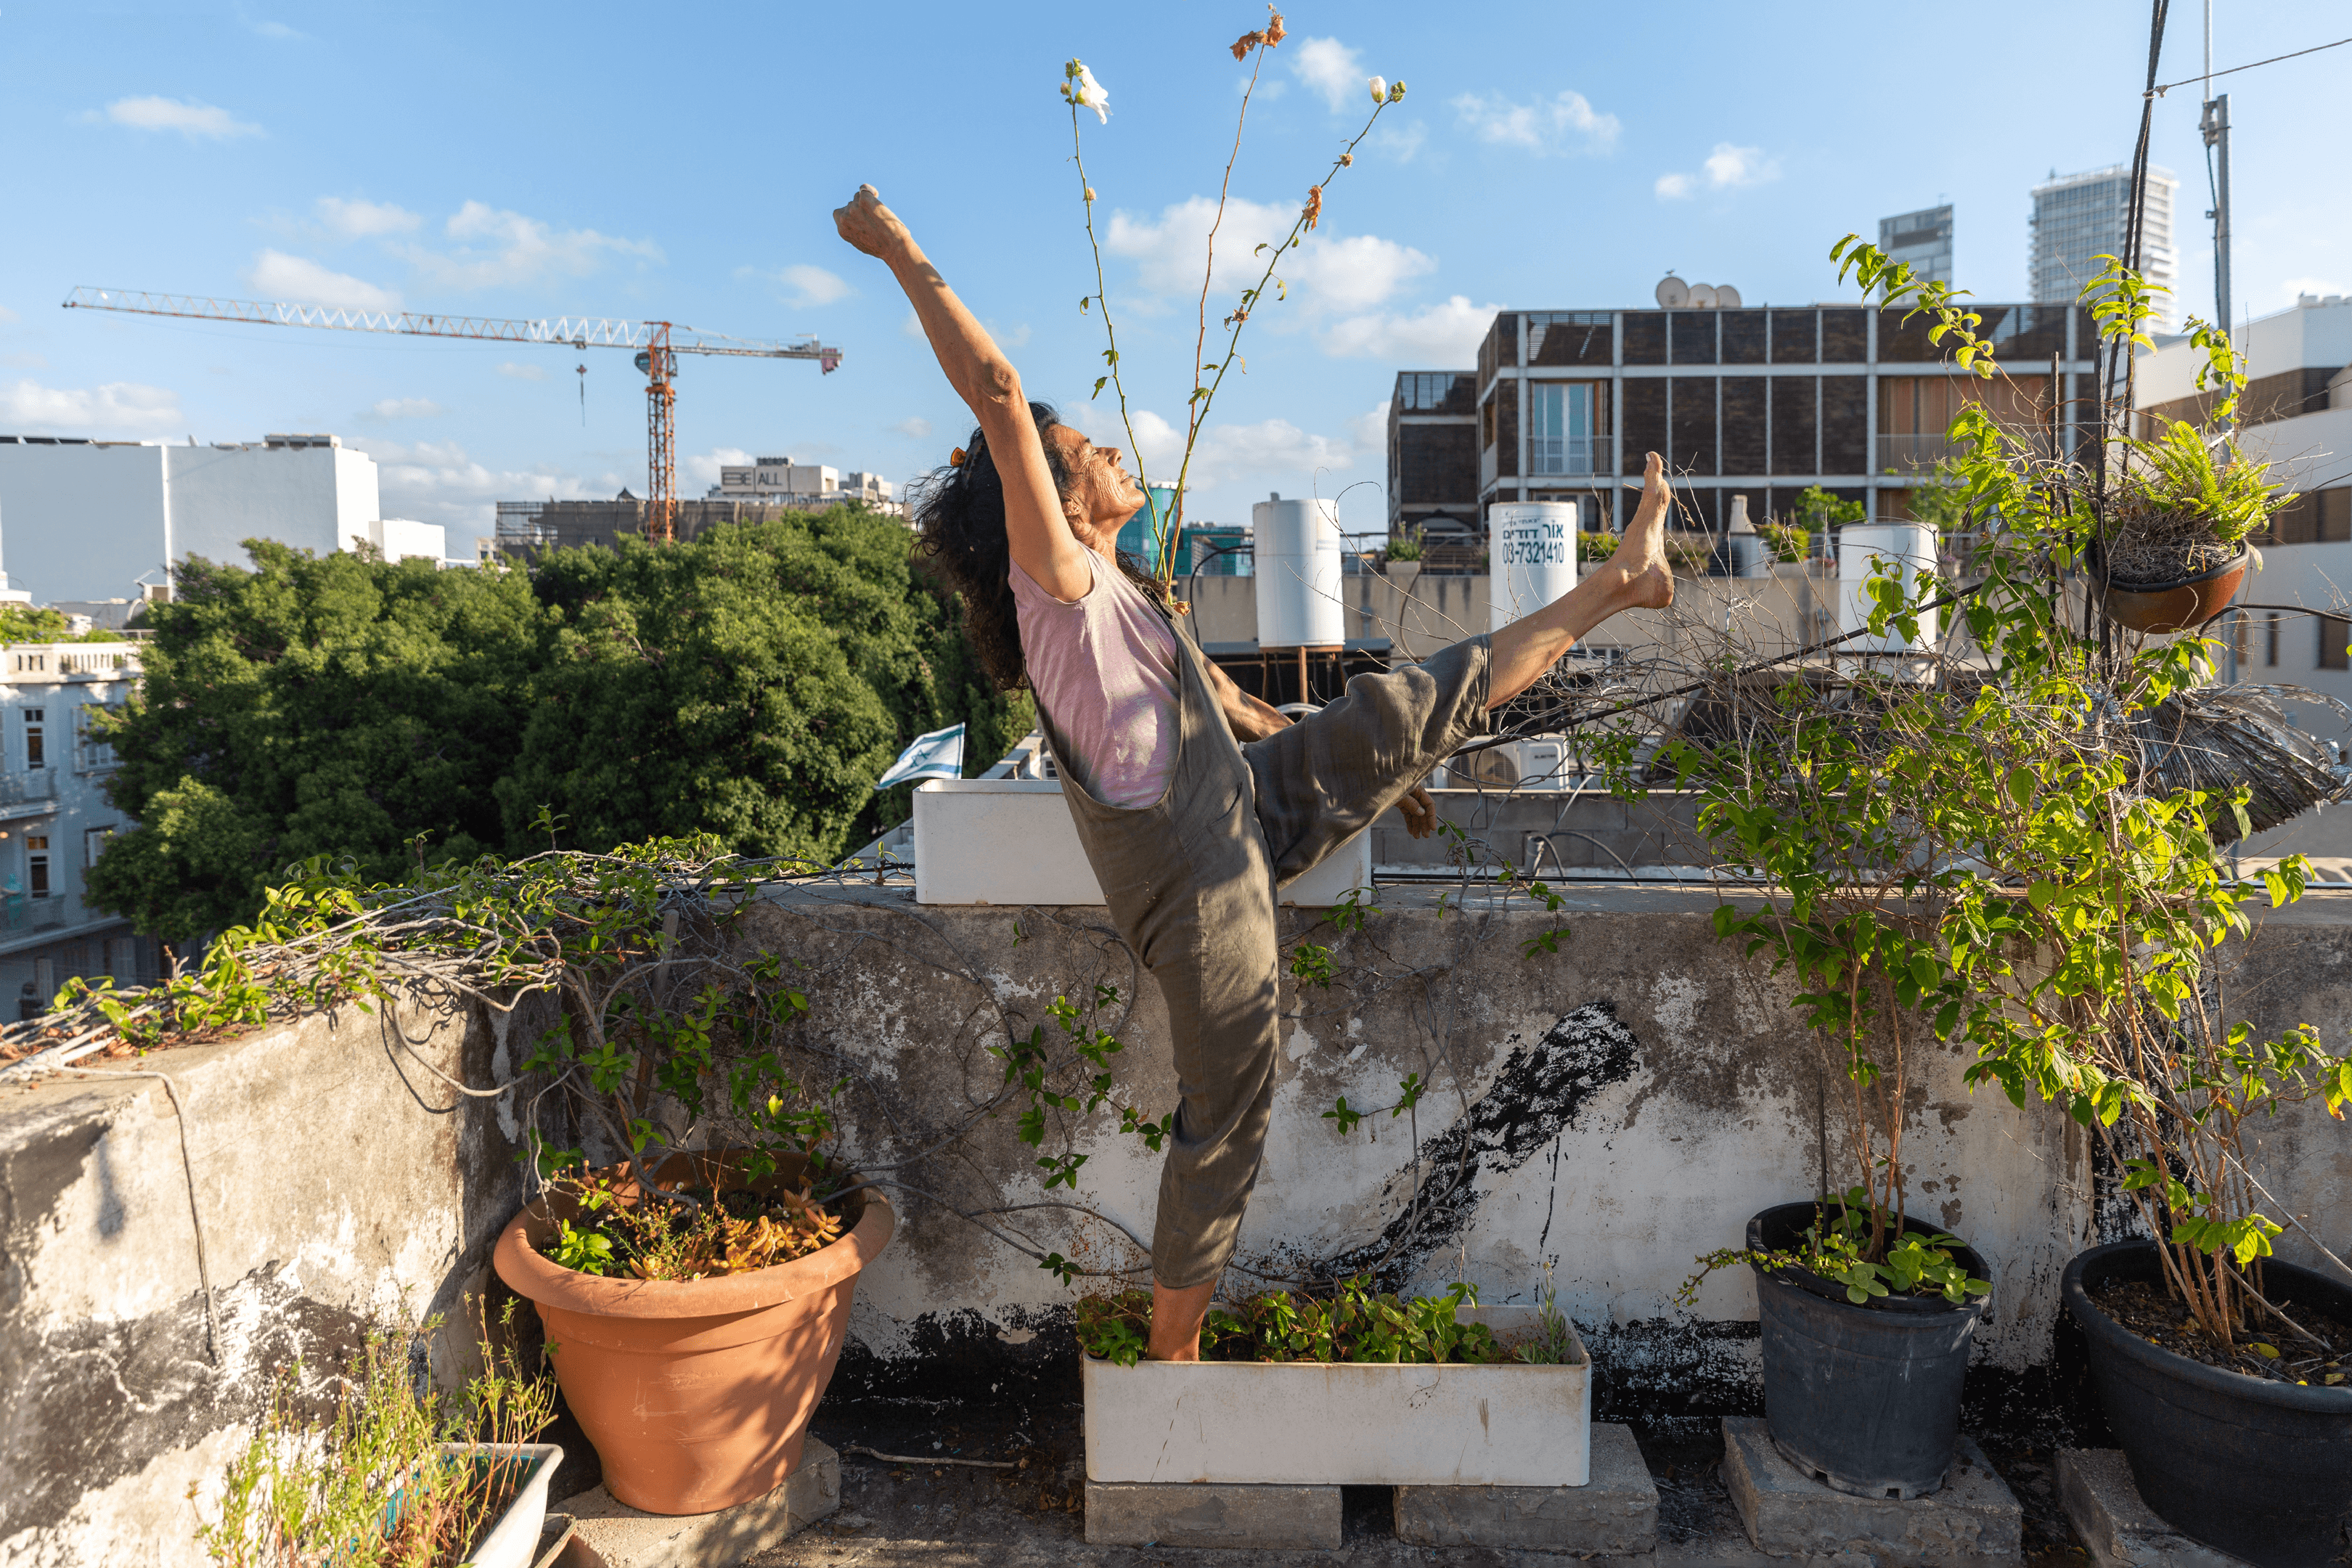 Dancers on Rooftops #121 - Orit (Israel, 2022)